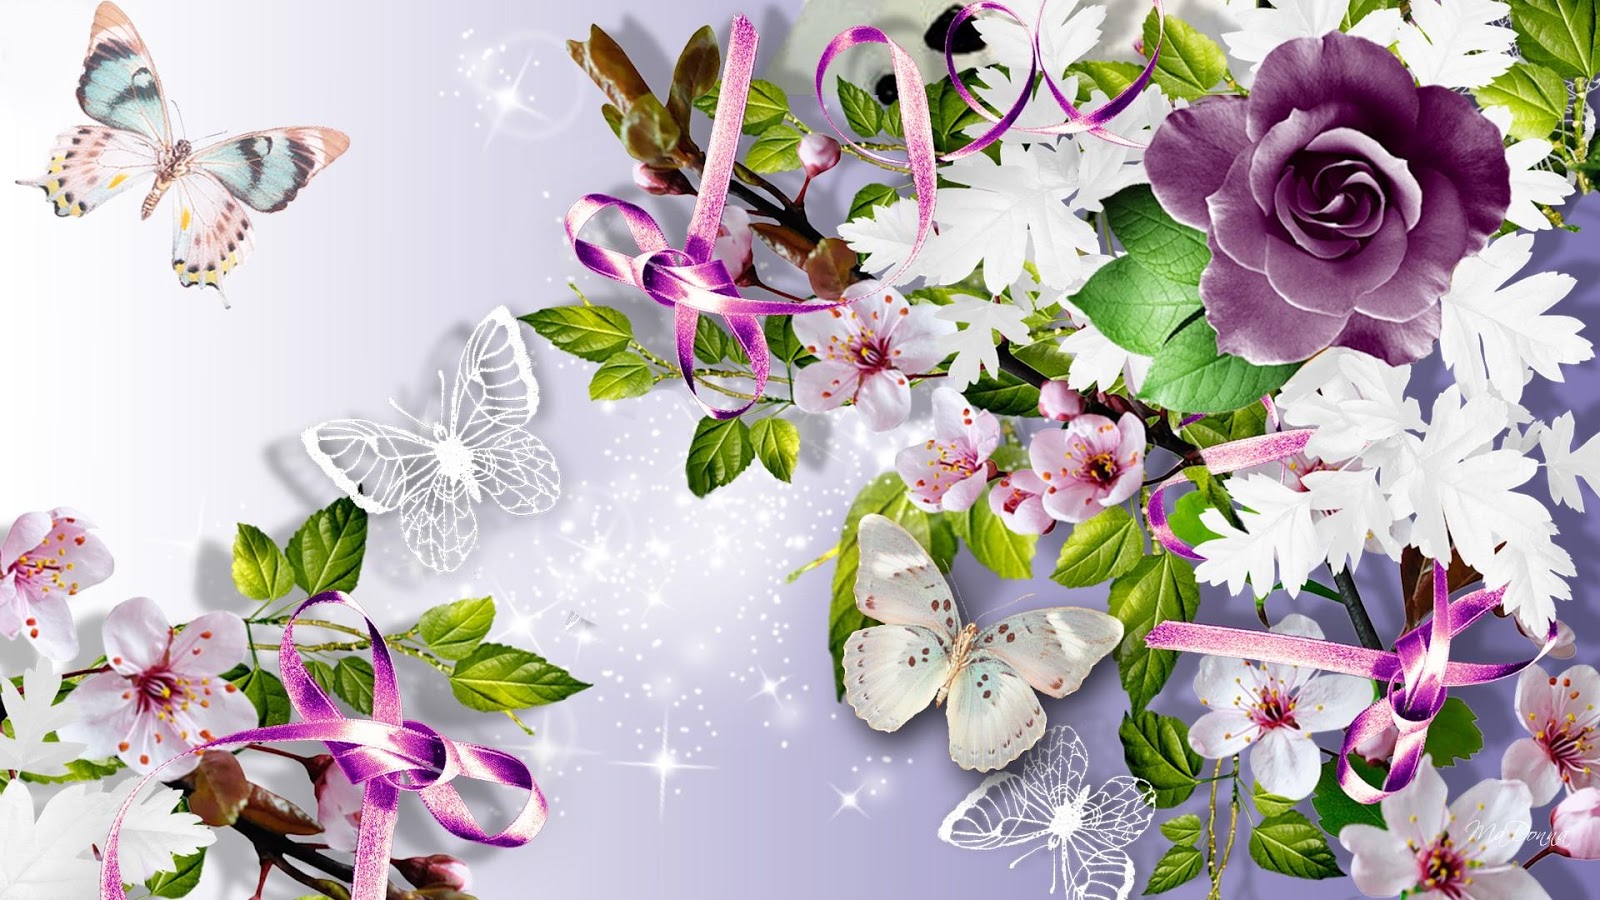 wallpapers de mariposas,flower,lilac,purple,violet,bouquet